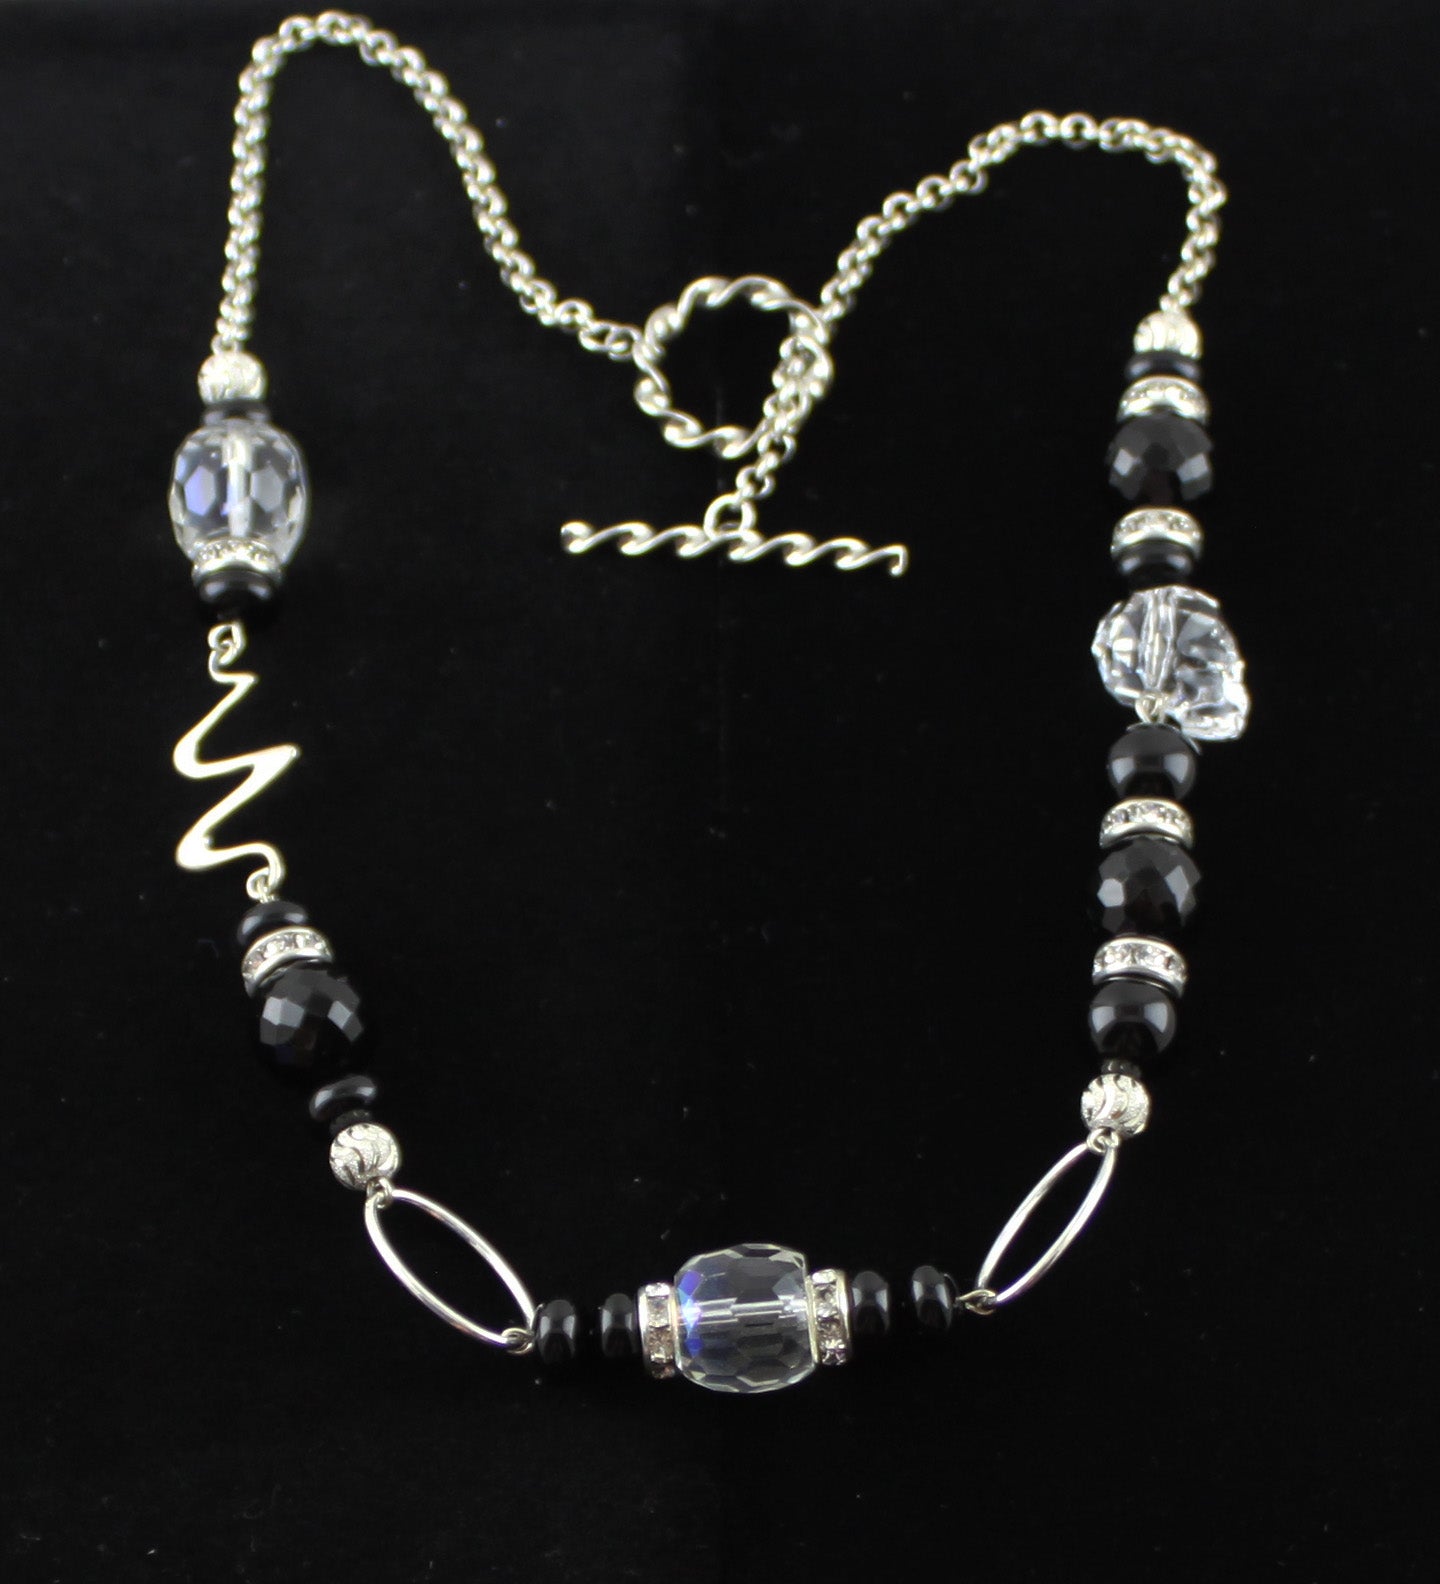 Silver & Black Swarovski Crystal Skull Necklace